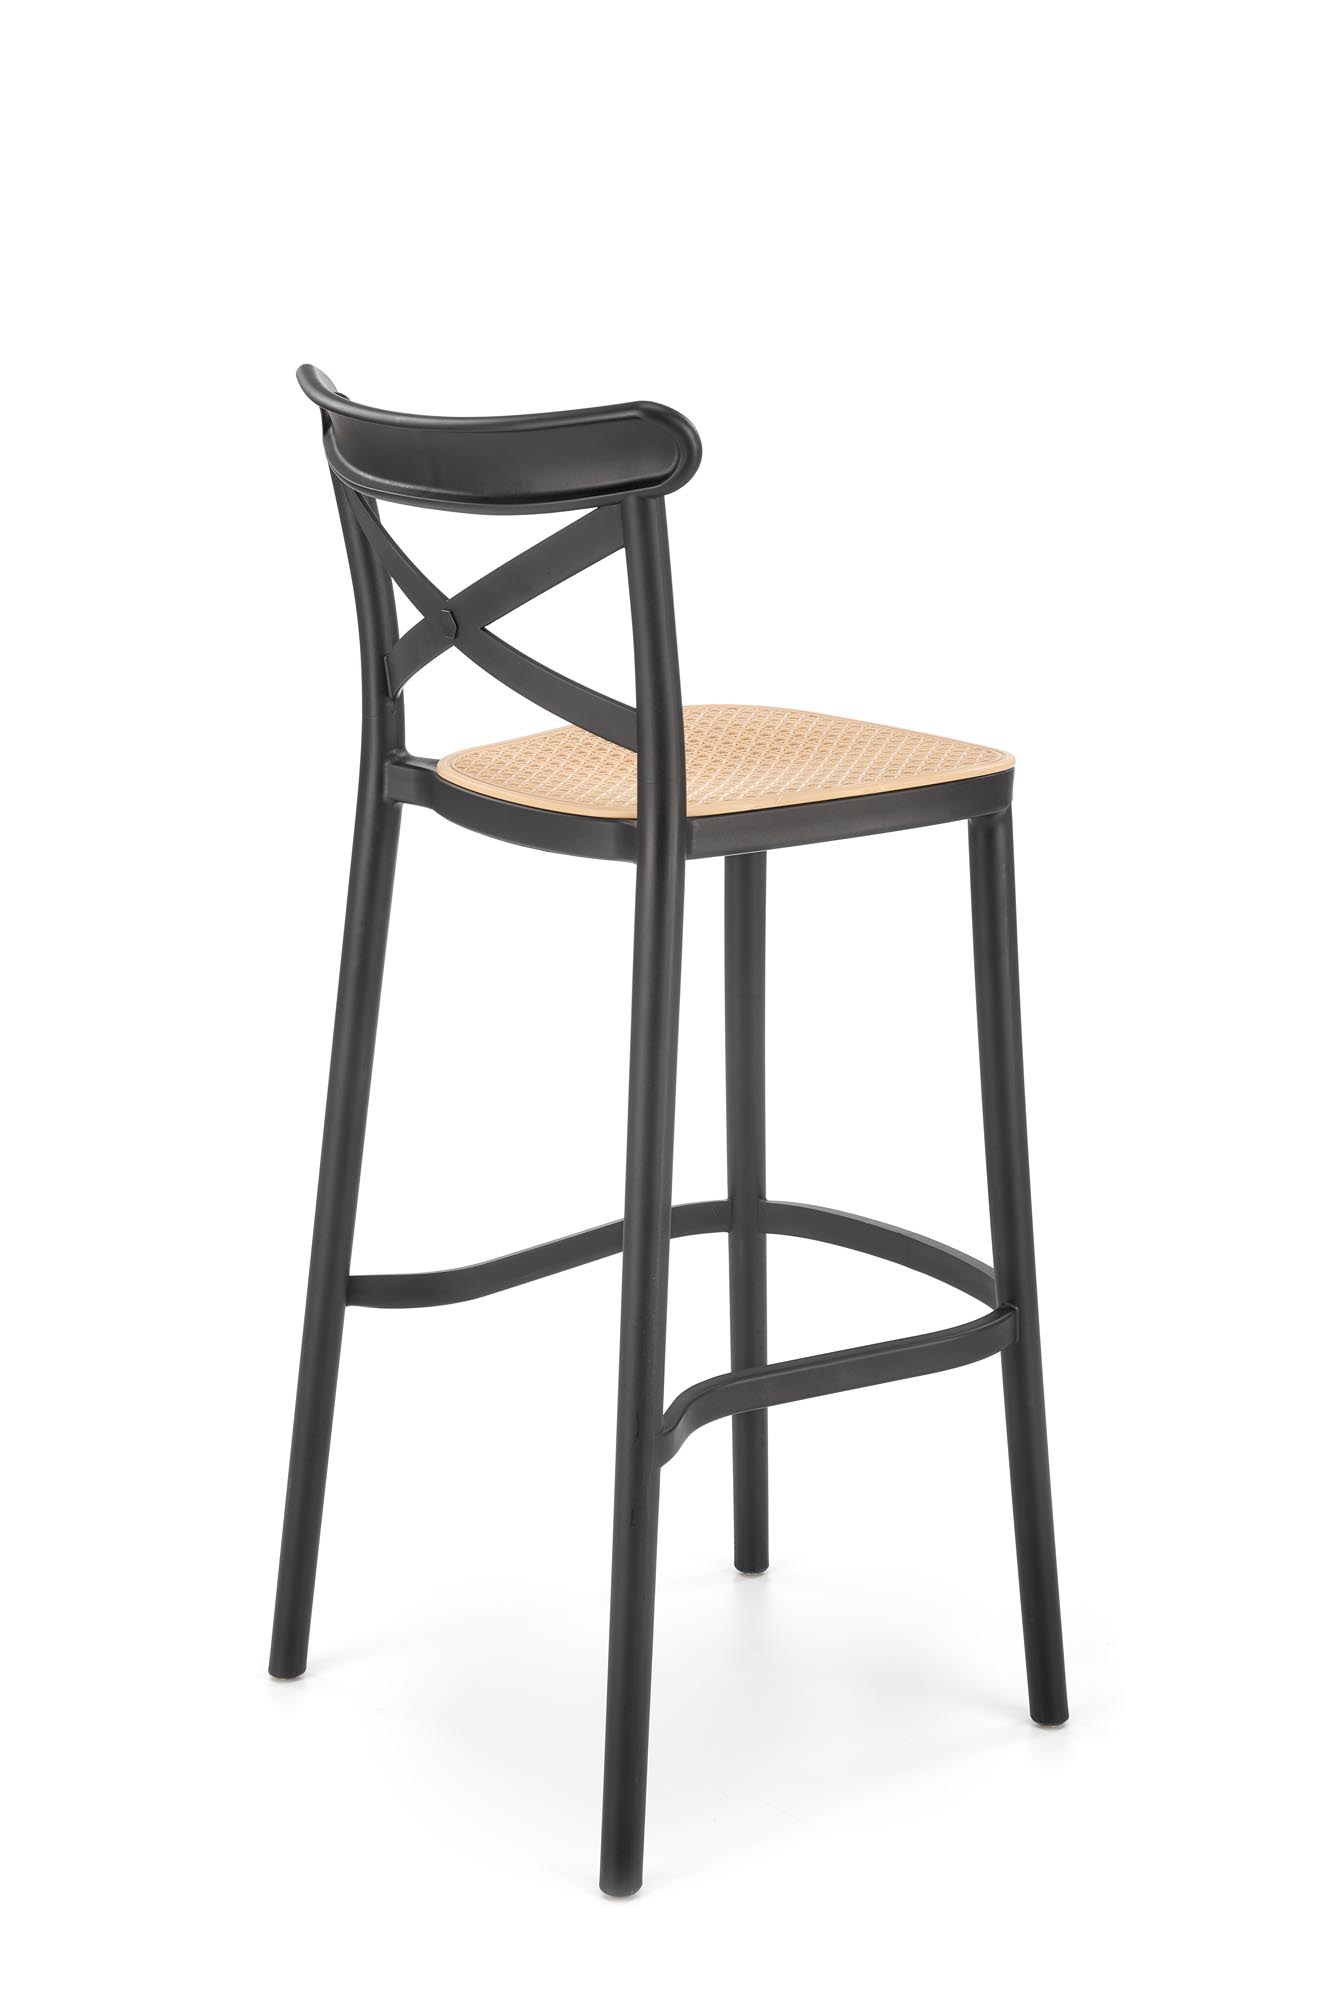 Barová stolička H111 - čierna / hnedá Barová stolička z tworzywa sztucznego h111 - Čierny / Hnedý